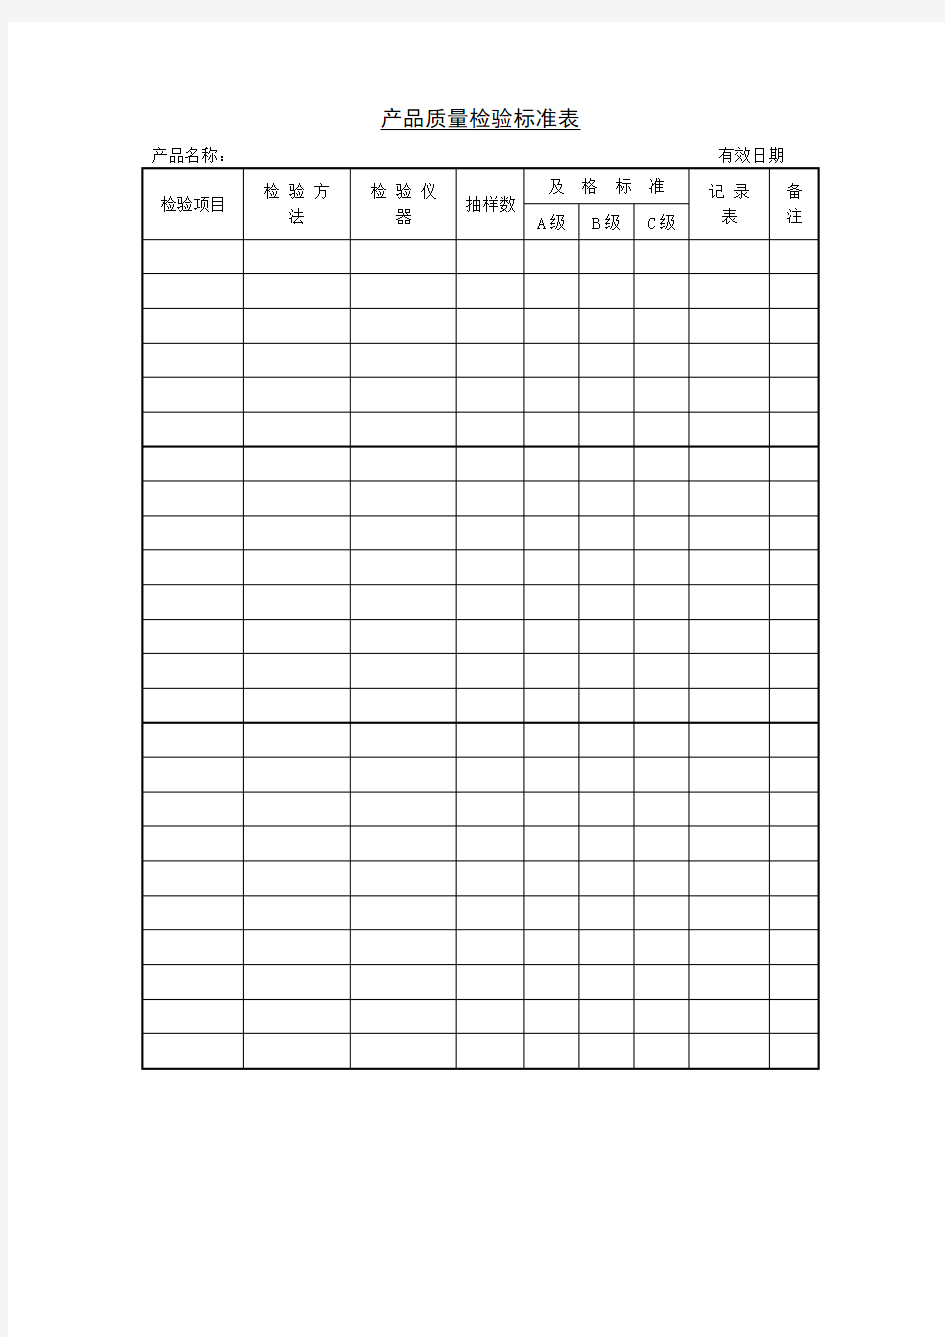 产品质量检验标准表表格模板格式